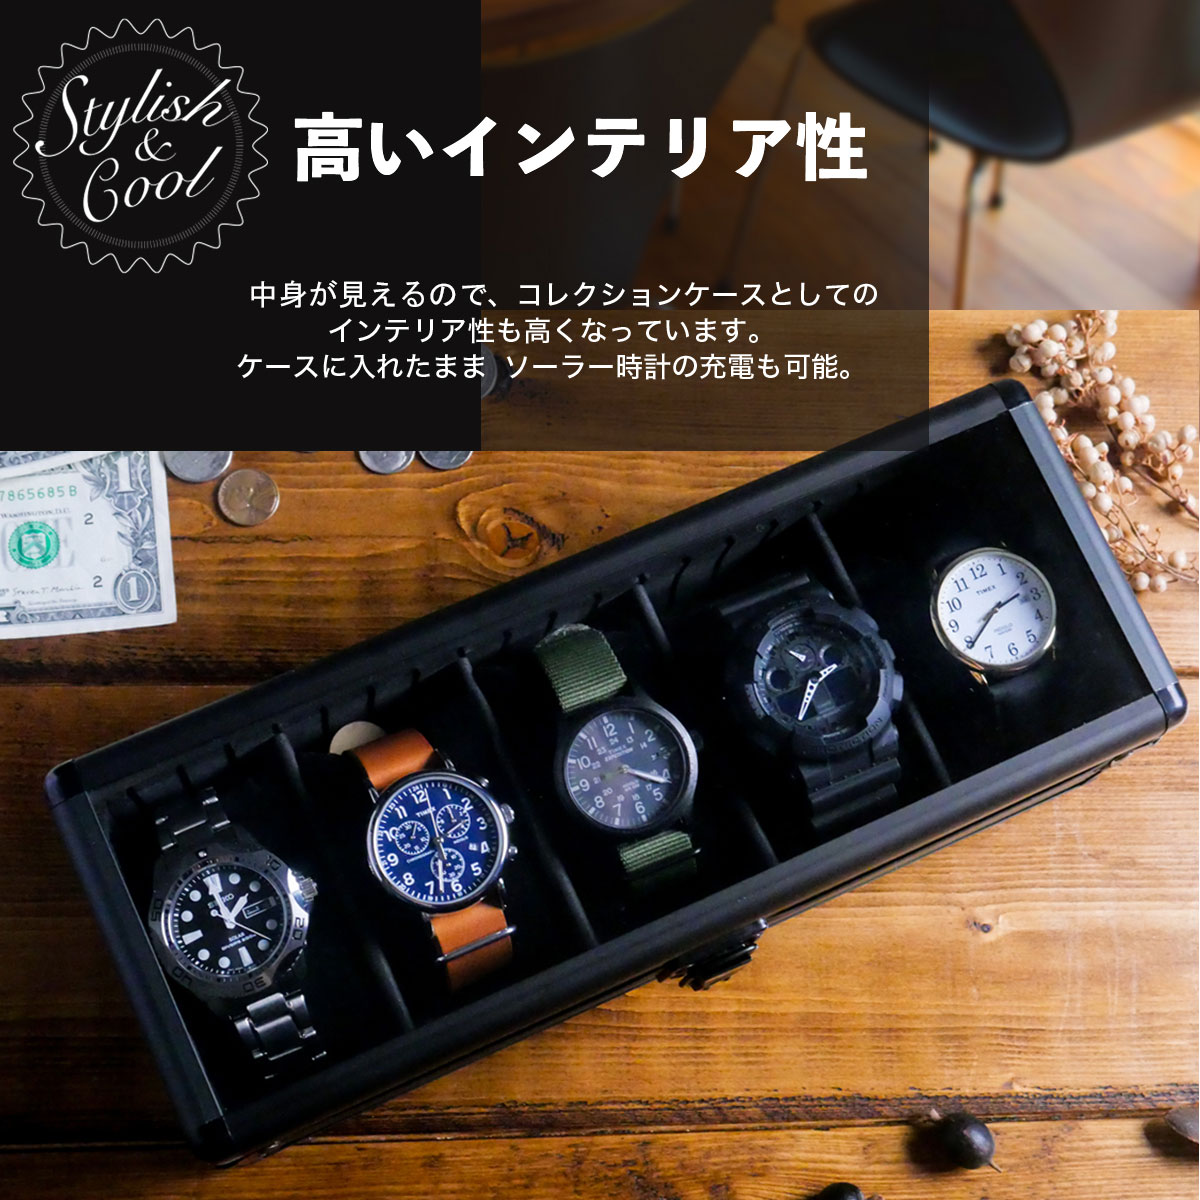 格安 価格でご提供いたします TAWBURY 腕時計ボックス オーガナイザー メンズ 大きな腕時計用 男性用ブラッ 引き出し付き 8つの時計ケース  #x2013; メンズ腕時計ボックス 腕時計用品